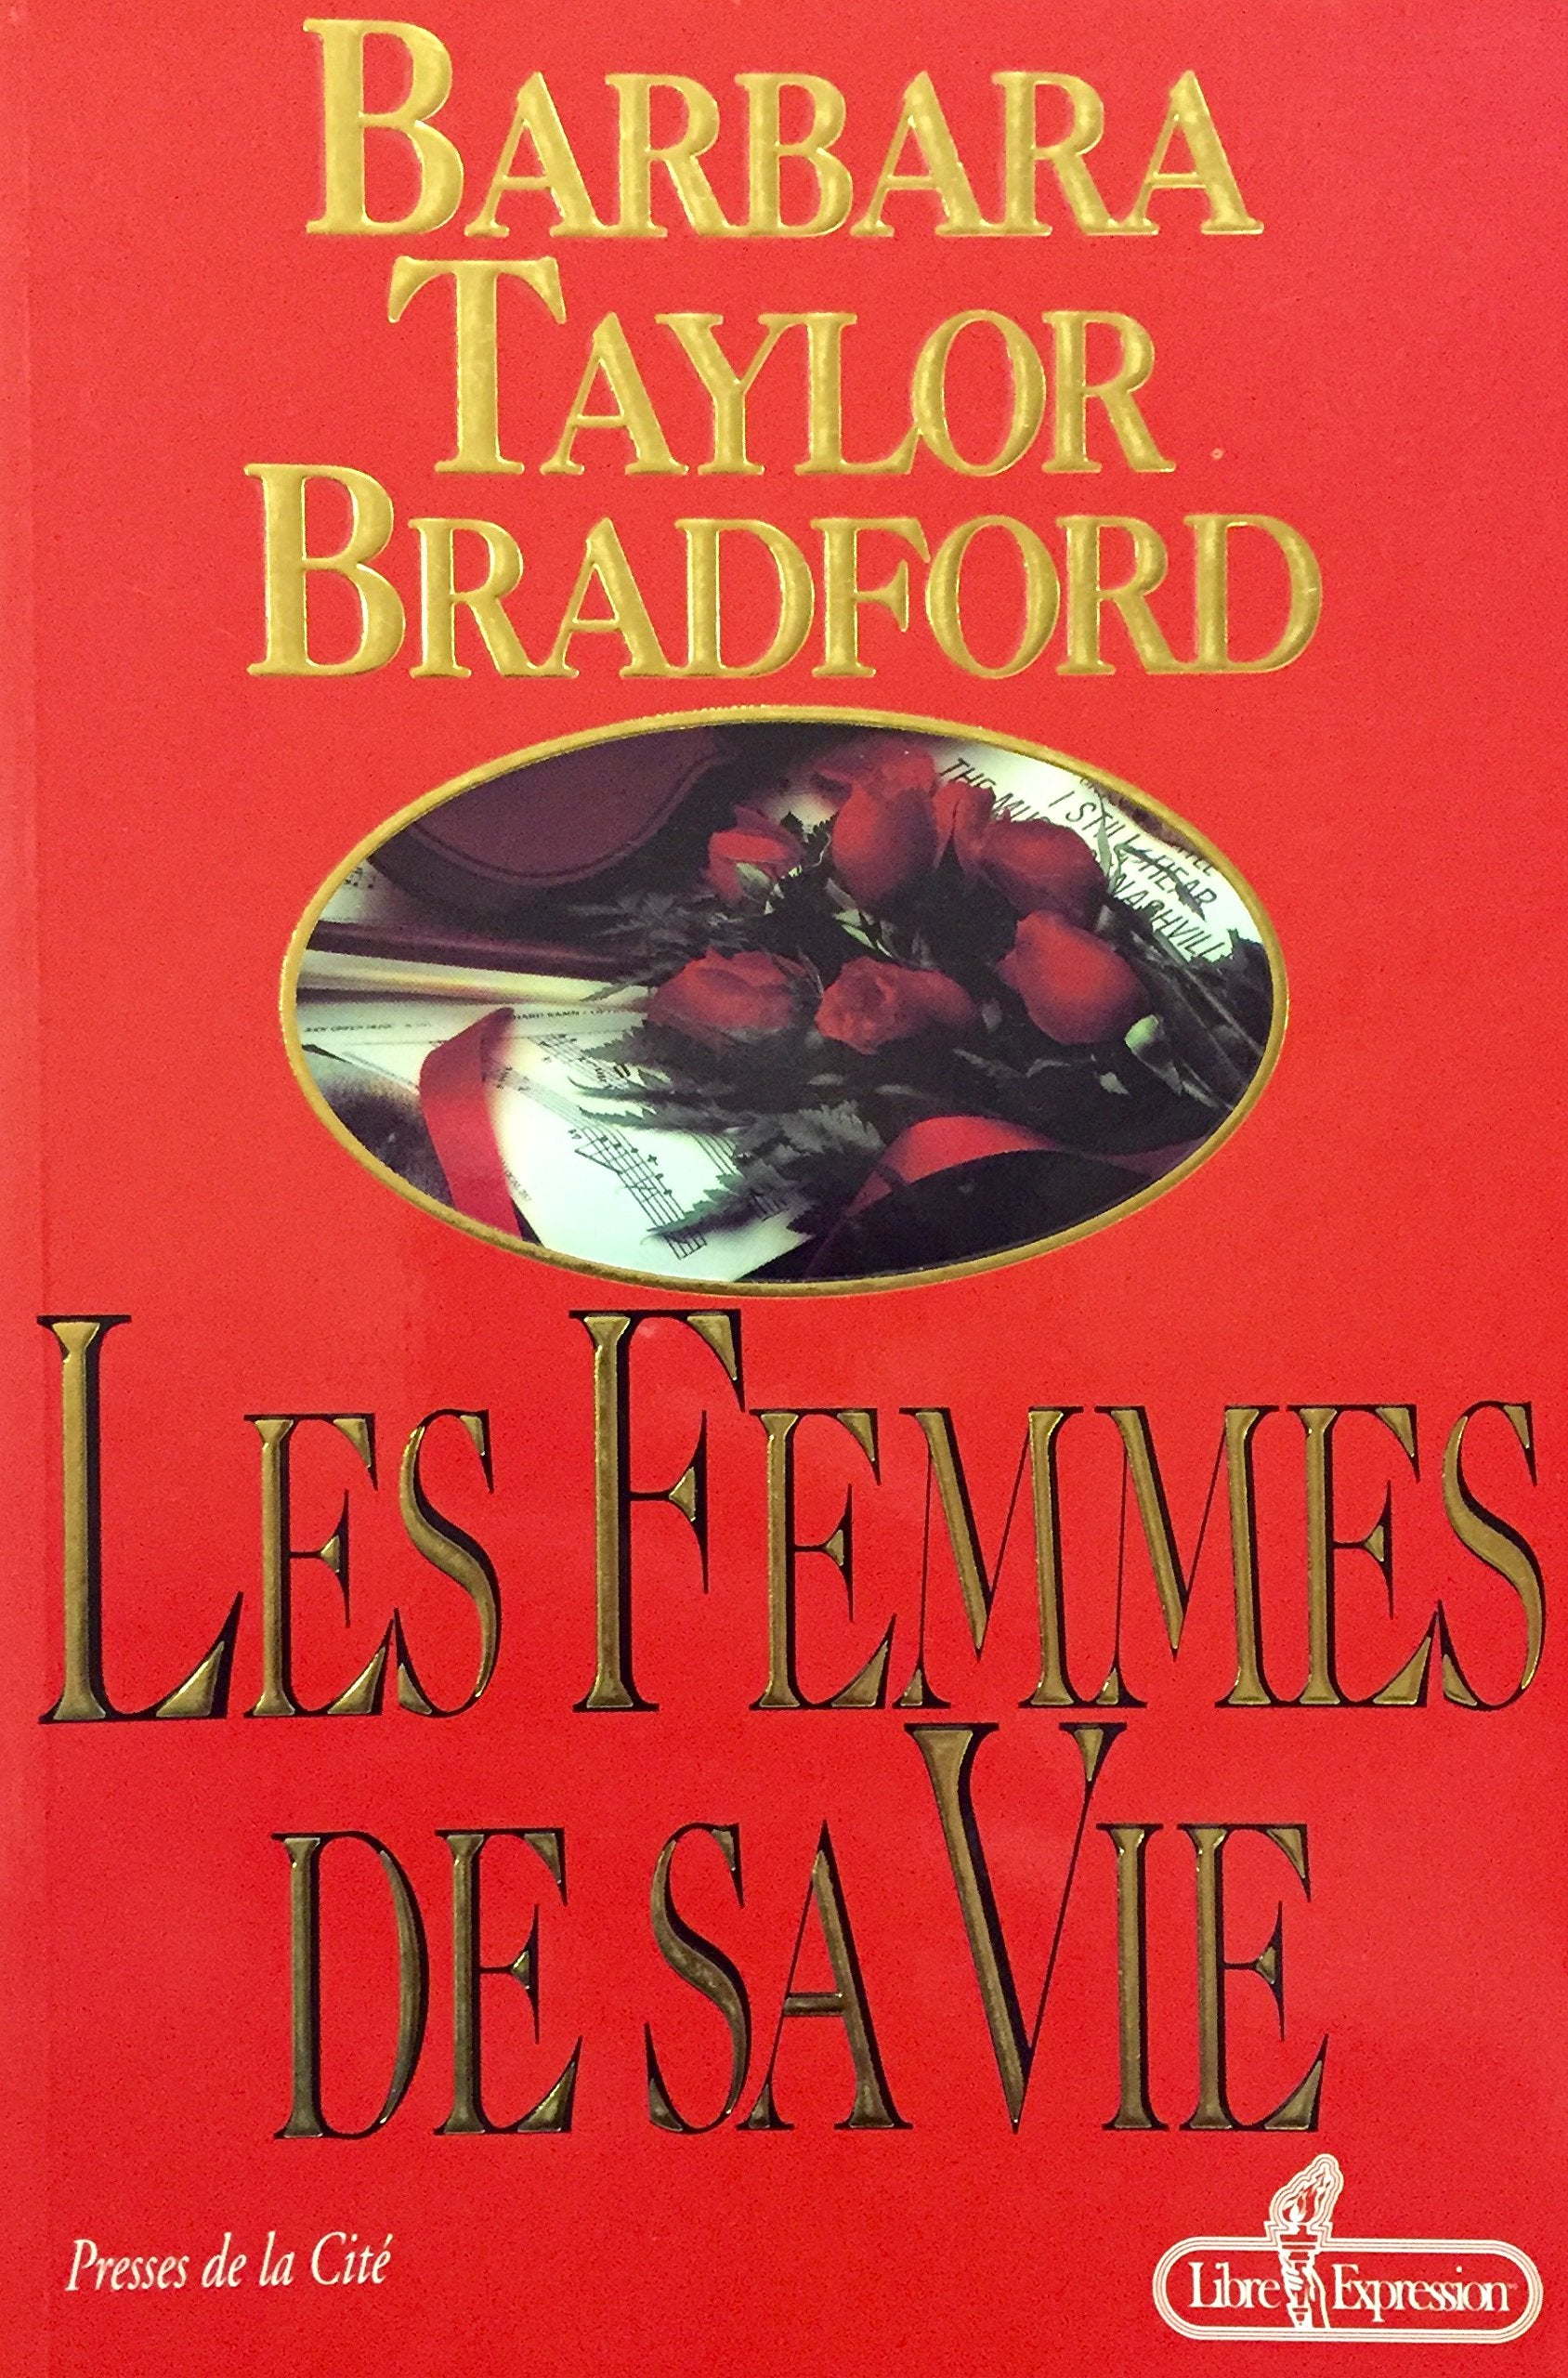 Livre ISBN 2891114922 Les femmes de sa vie (Barbara Taylor Bradford)